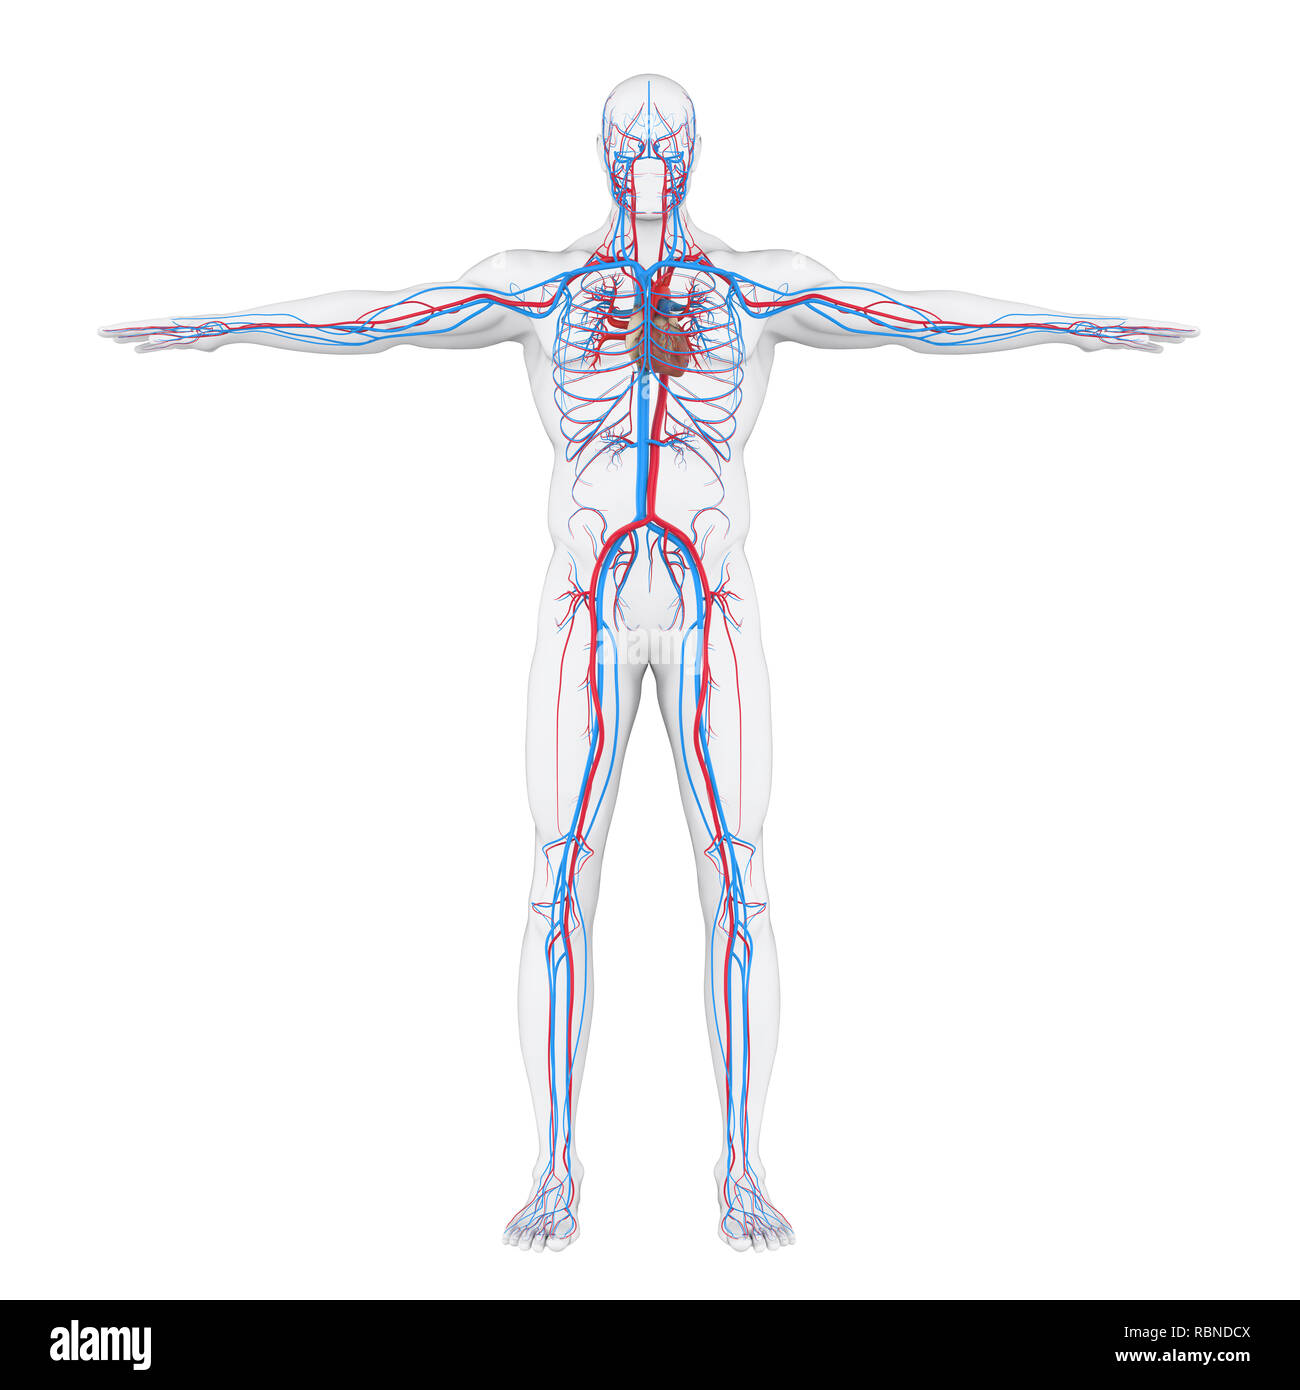 Ilustración del sistema circulatorio humano Foto de stock